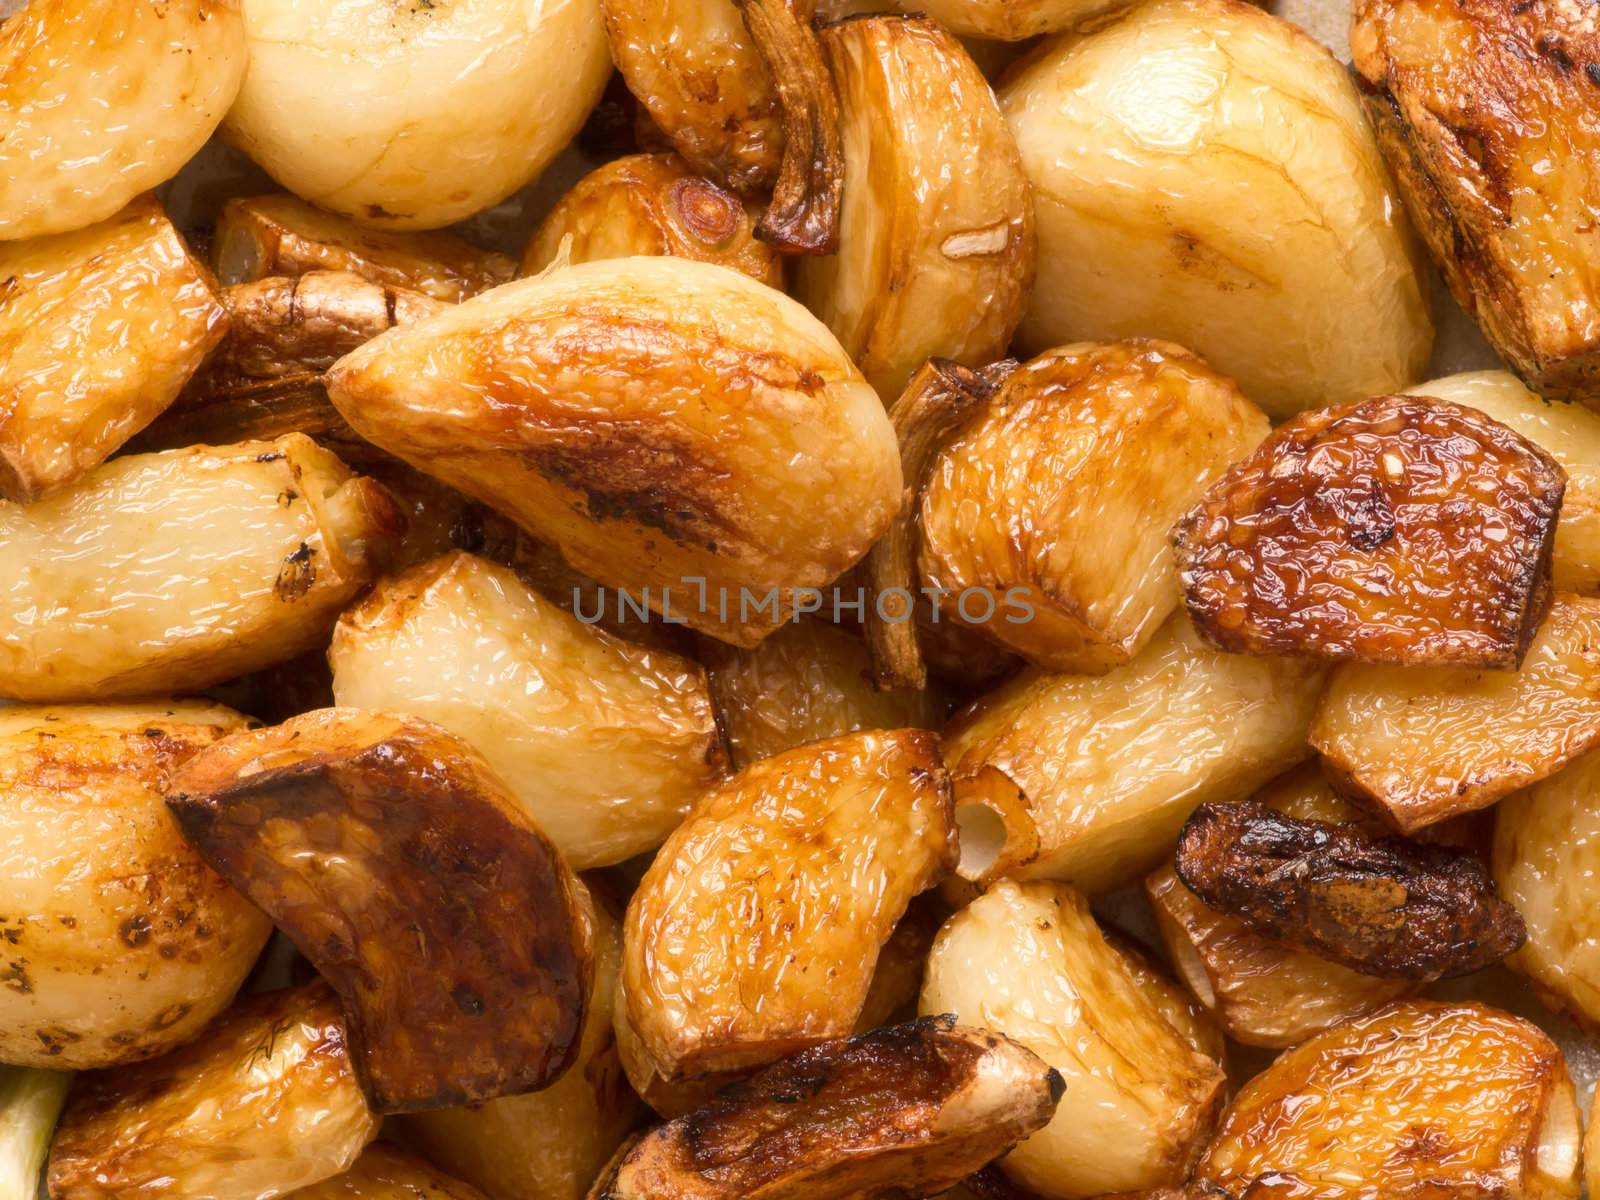 crispy fried garlic by zkruger